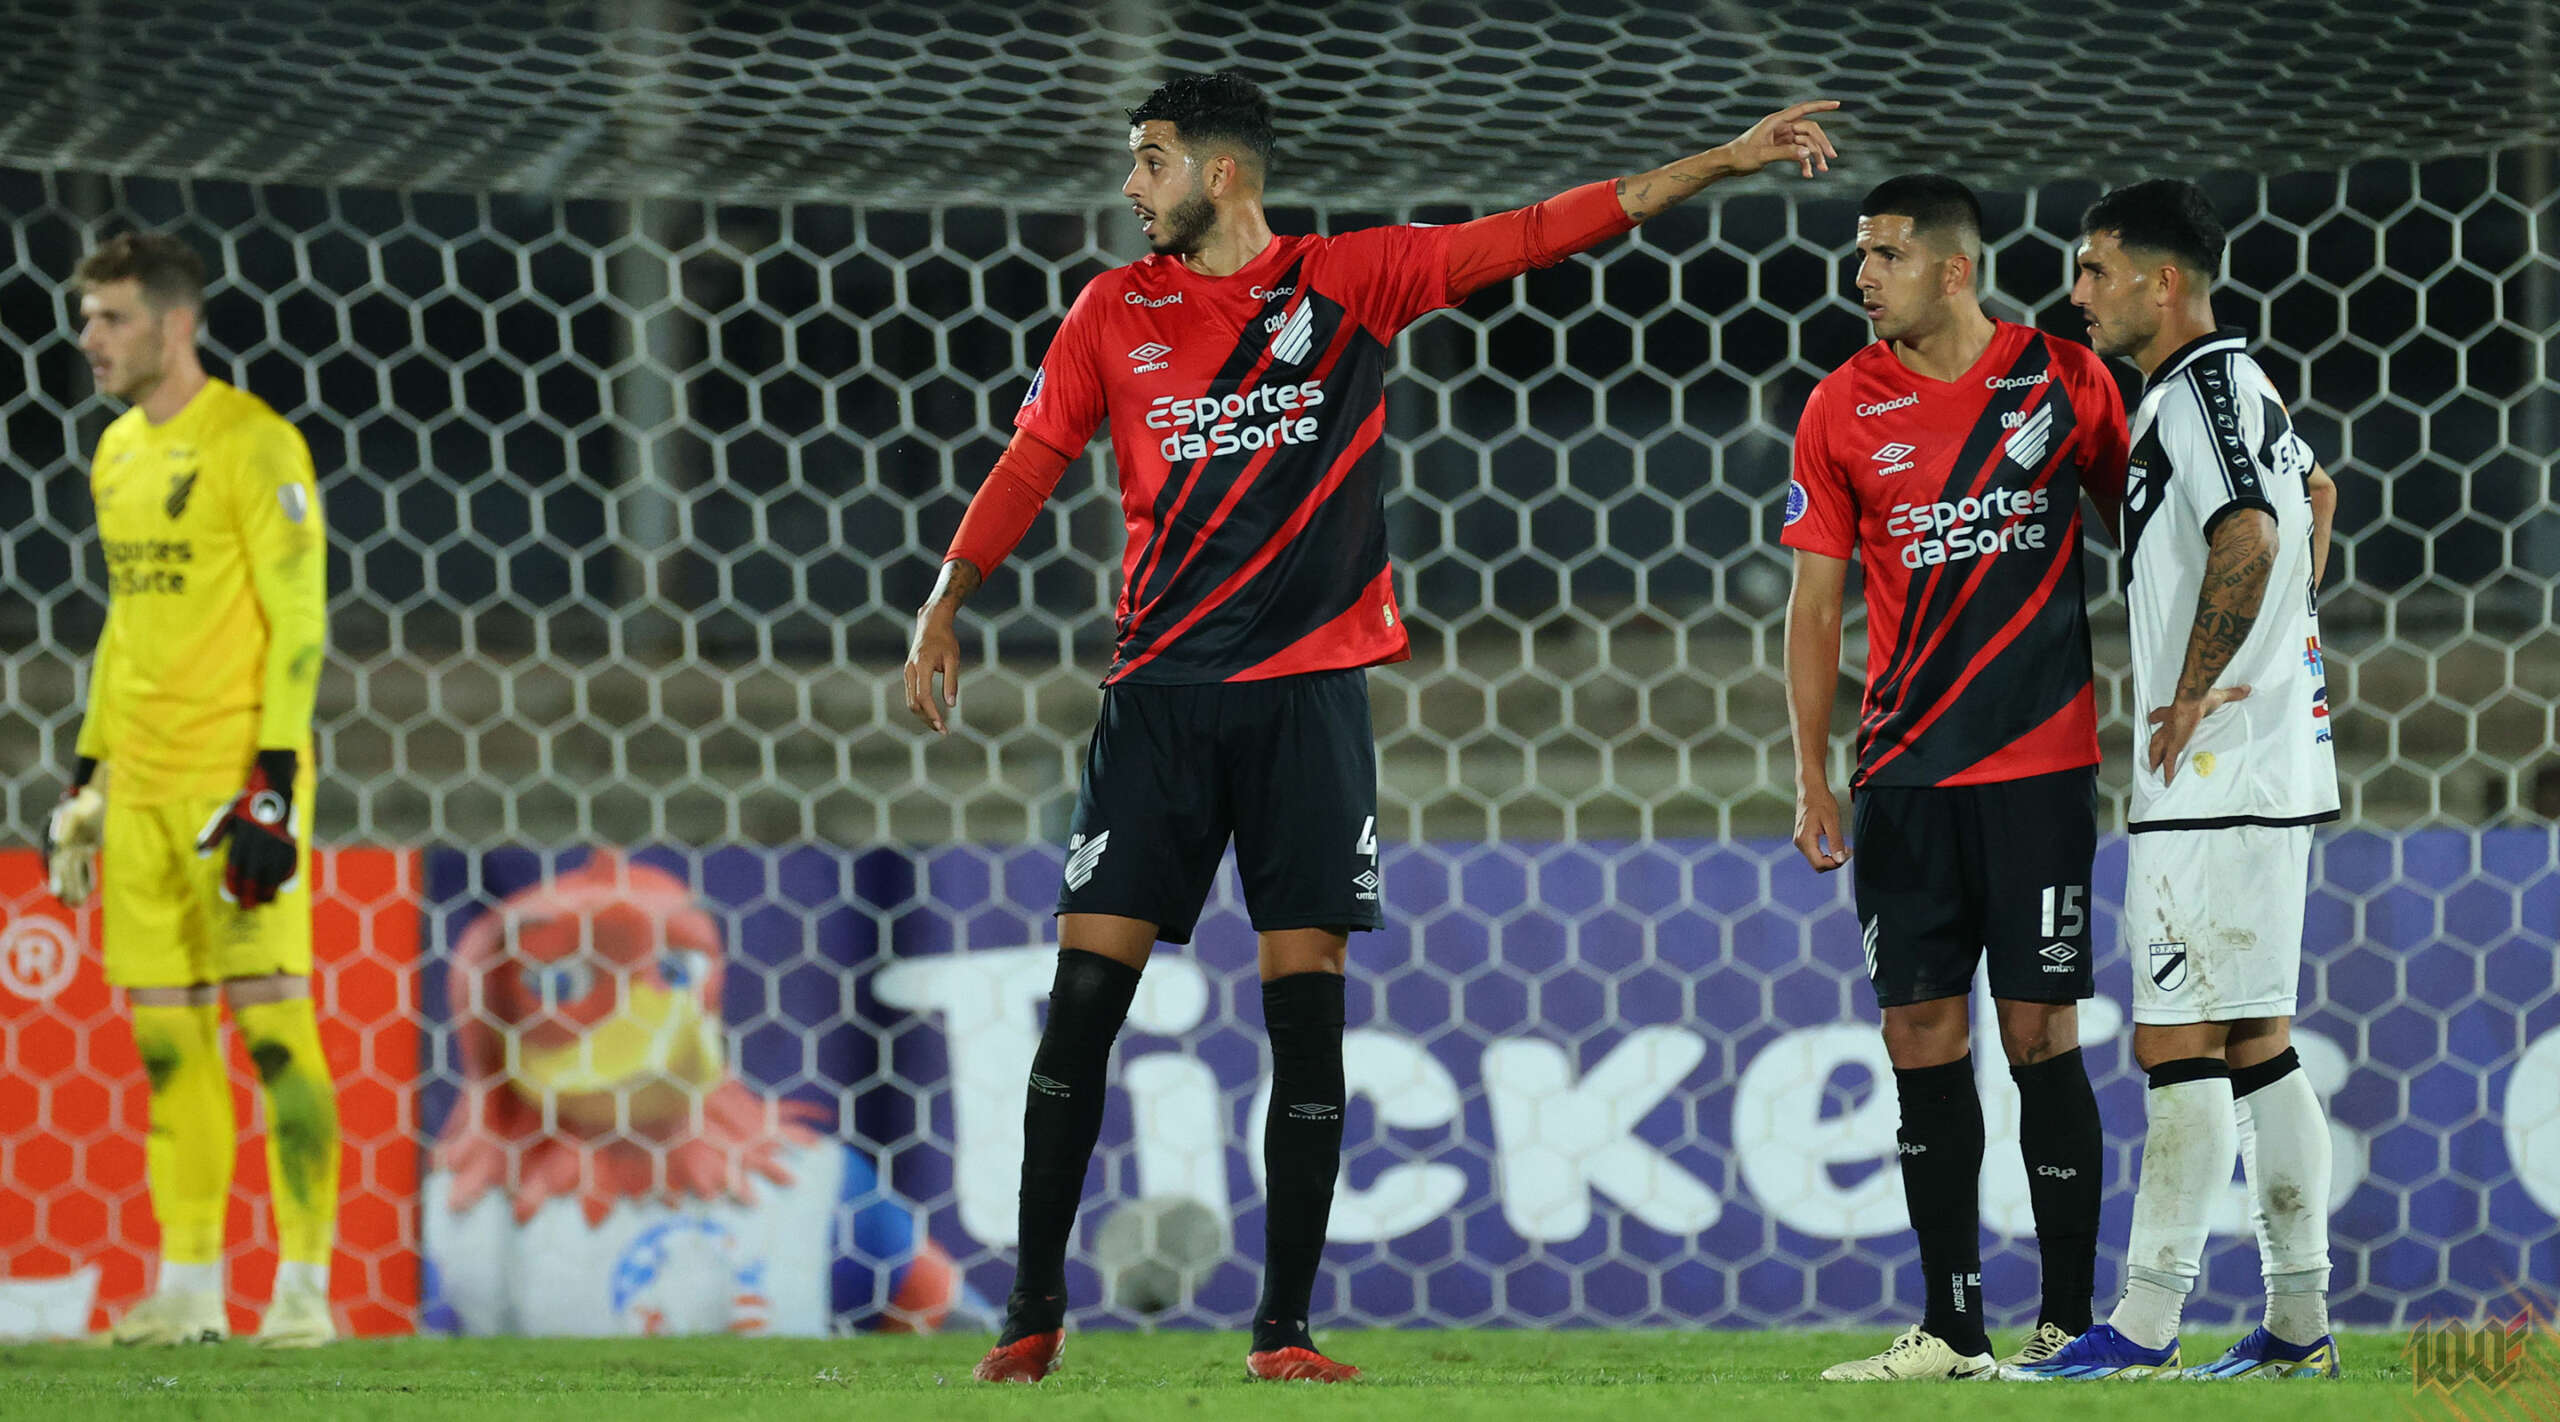 Kaique Rocha cita ‘erro 0’ na vitória sobre Danubio em ‘ano importante’ para o Athletico